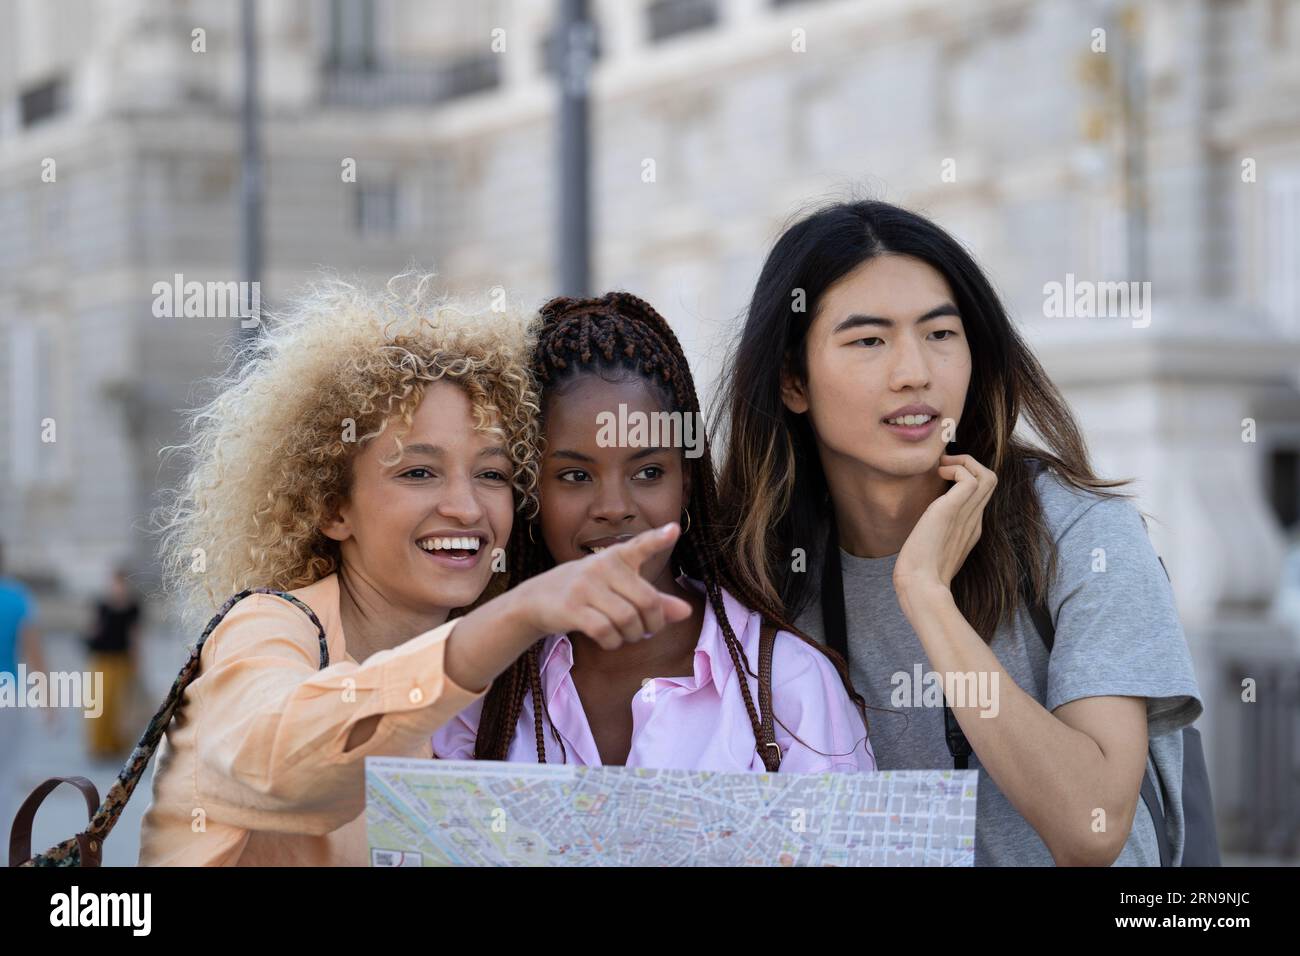 Gruppe junger, multiethnischer, lächelnder Touristen, die Madrid besuchen. Ein Mädchen hält eine Karte auf ihren Händen. Stockfoto